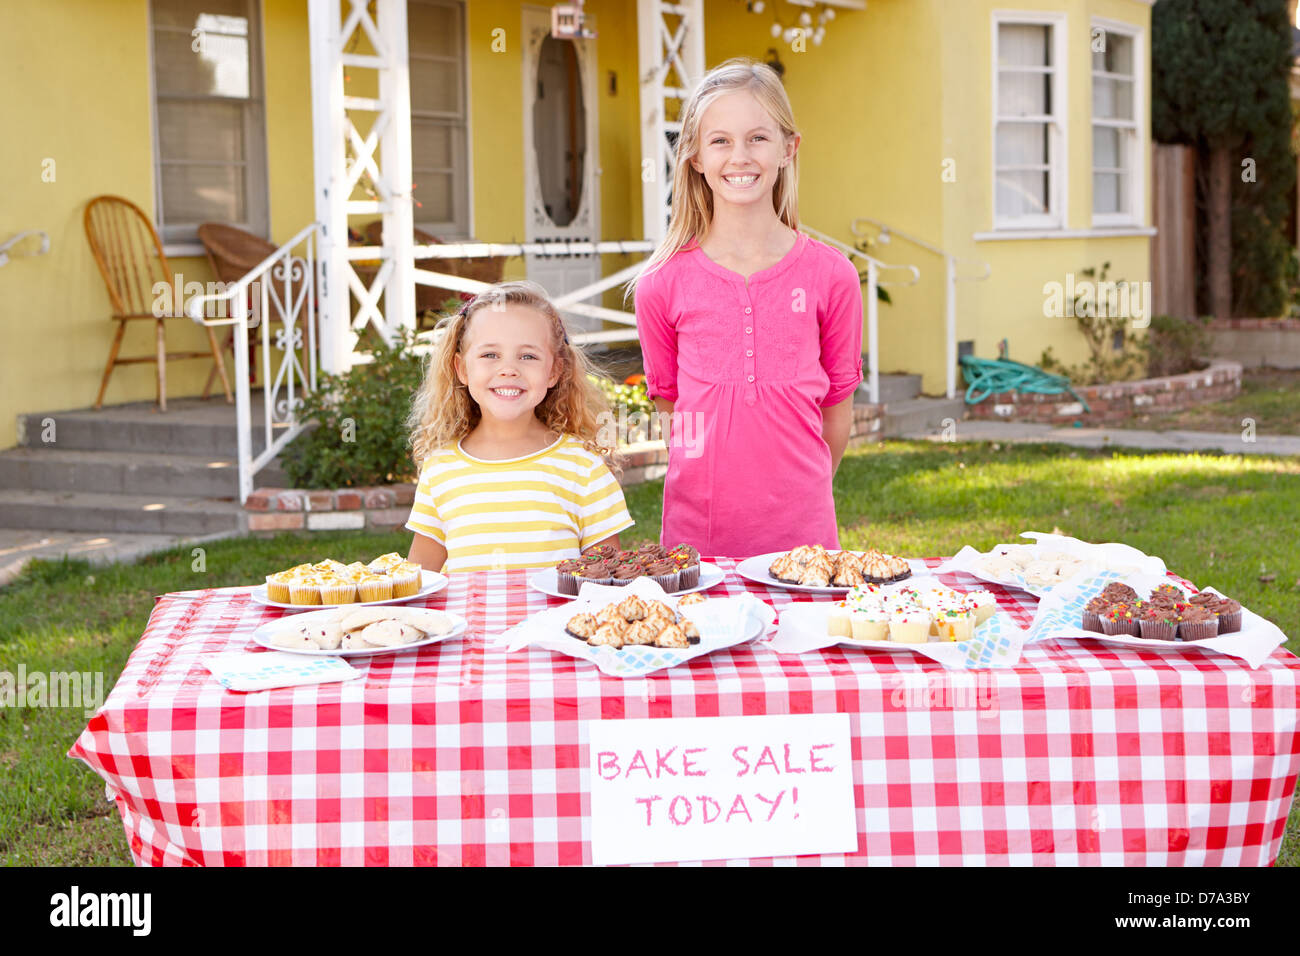 Children Running Charity Bake Sale Stock Photo